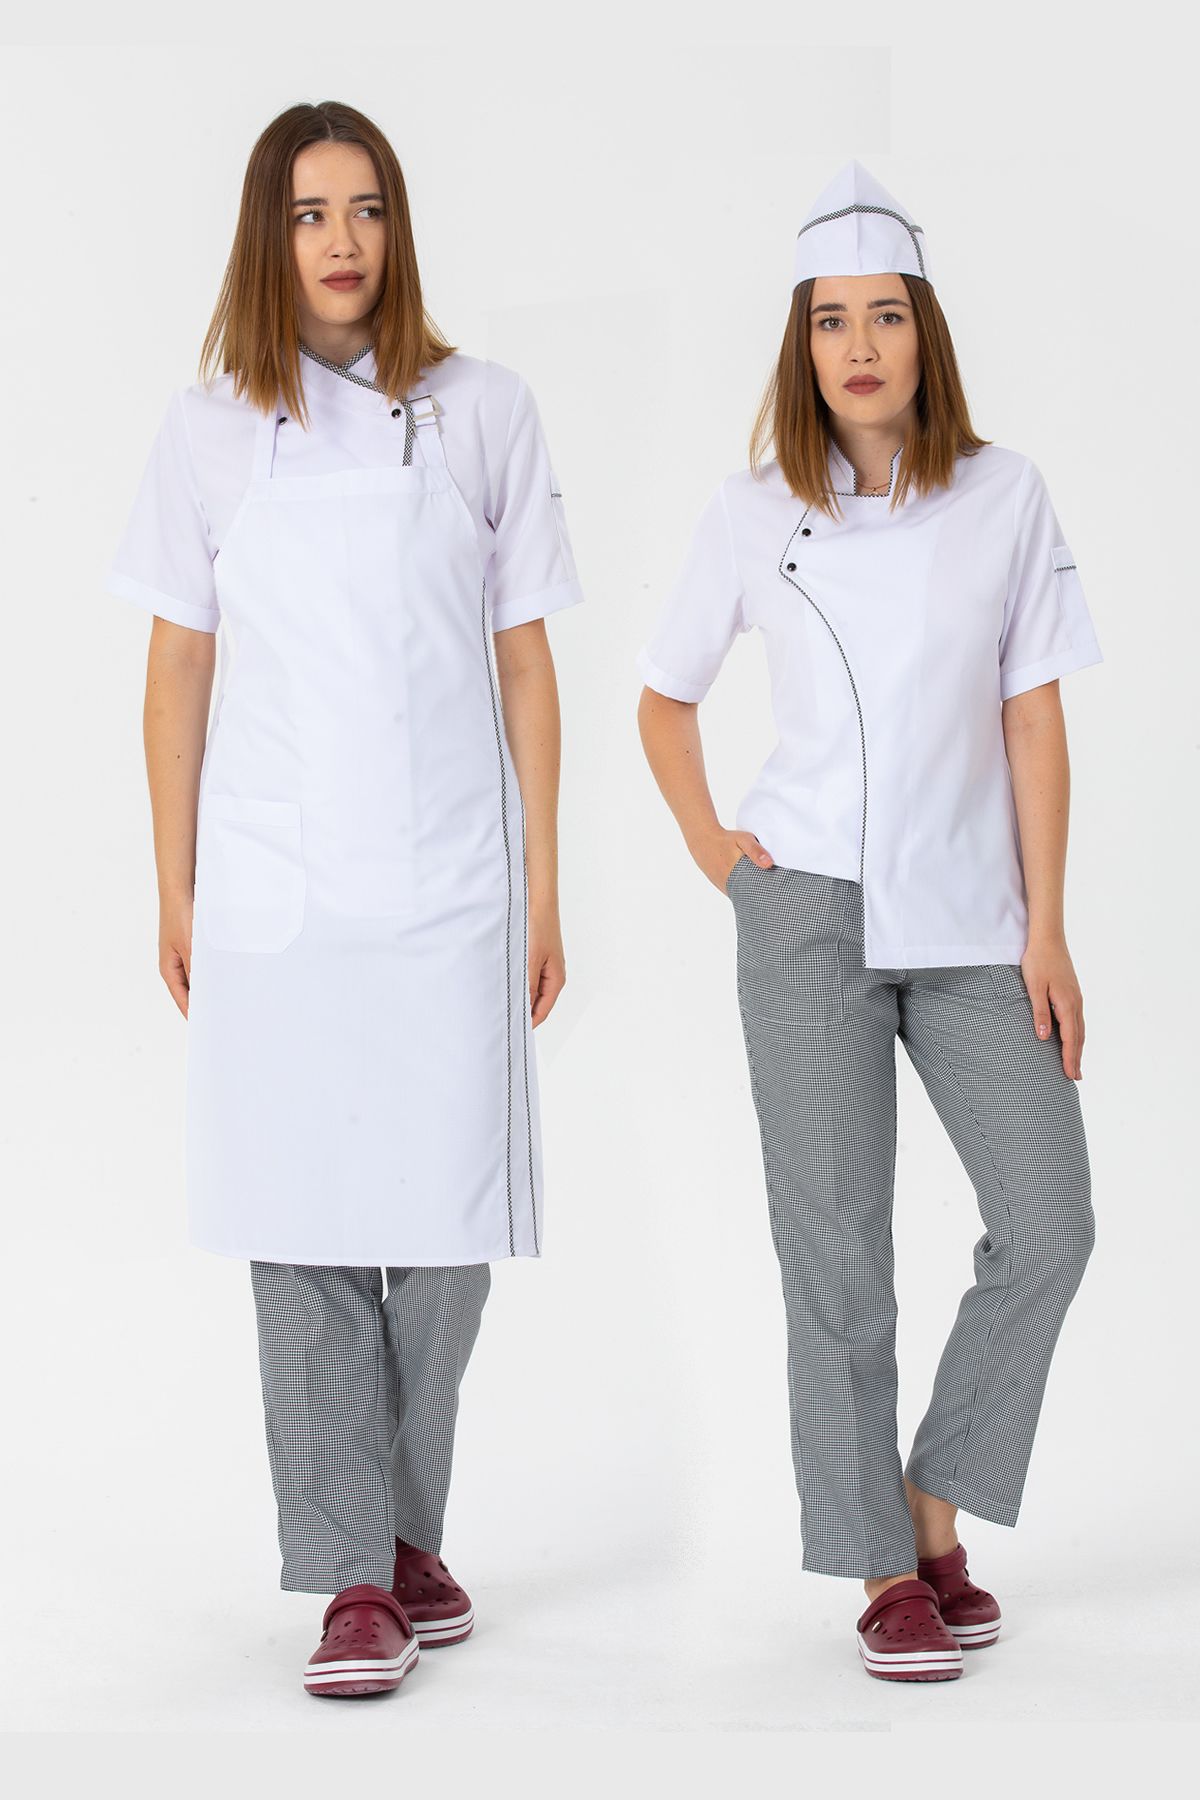 TIPTEKS Kadın Kısa Kollu Beyaz Ceket (Pötikare Biyeli)+Pötikare Pantolon+Askılı Önlük ve Kep Aşçı Dörtlü Set